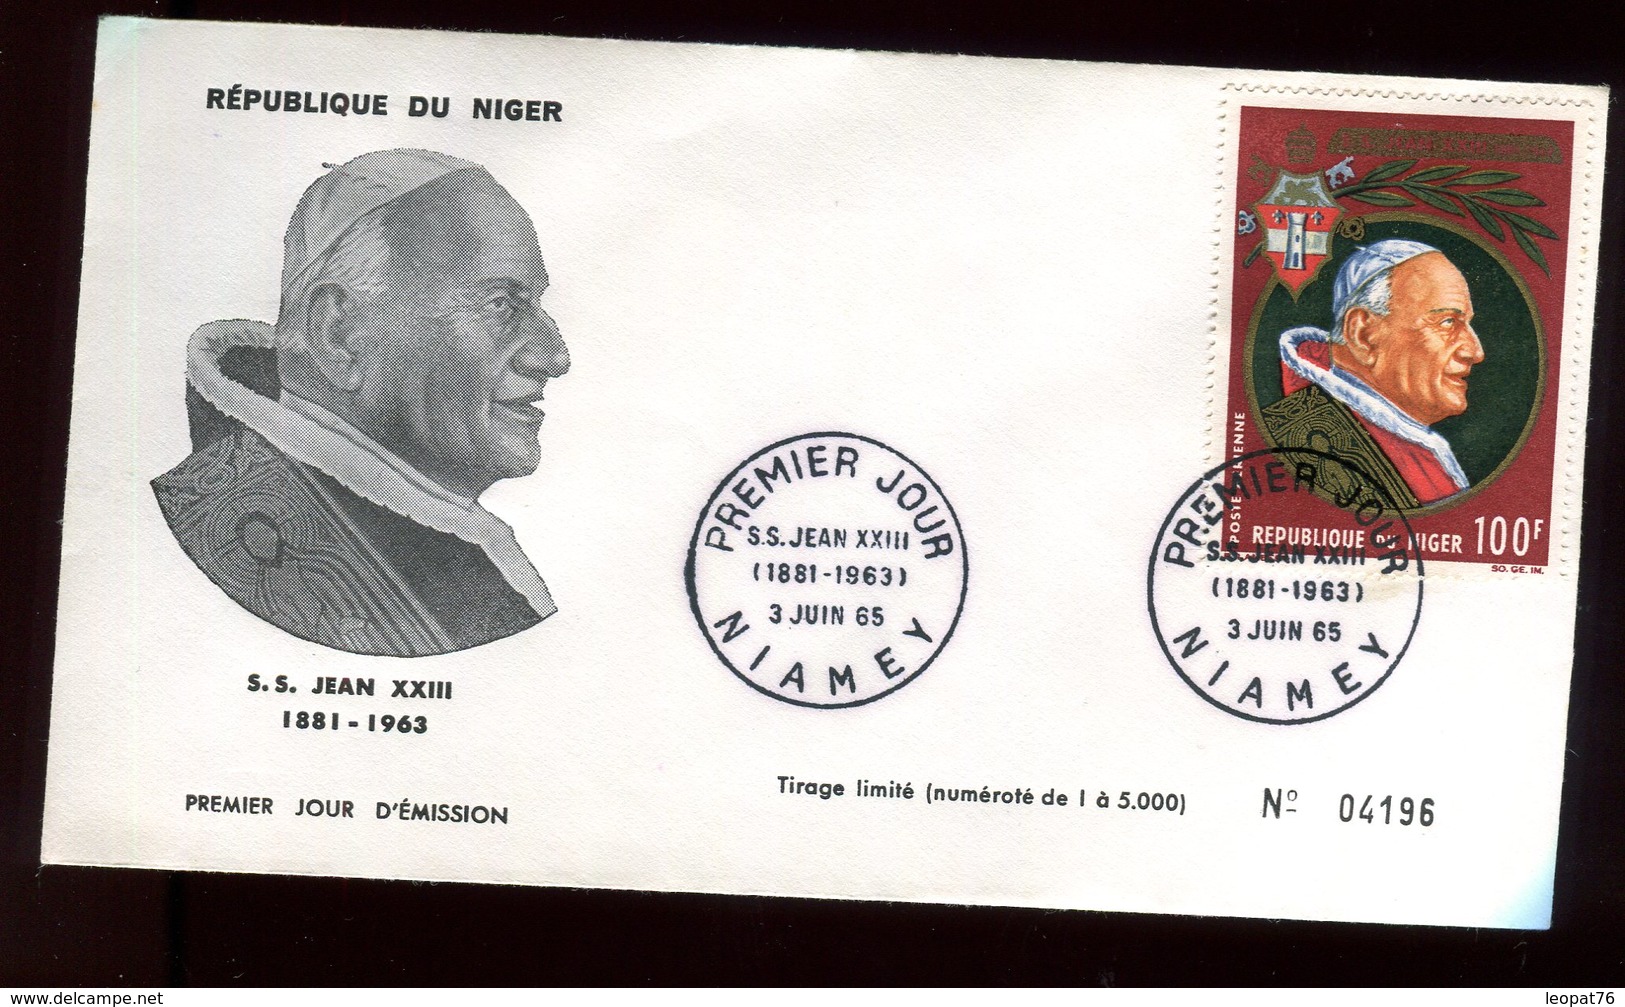 Niger - Enveloppe FDC 1965 - Pape Jean XXIII - O 290 - Niger (1960-...)